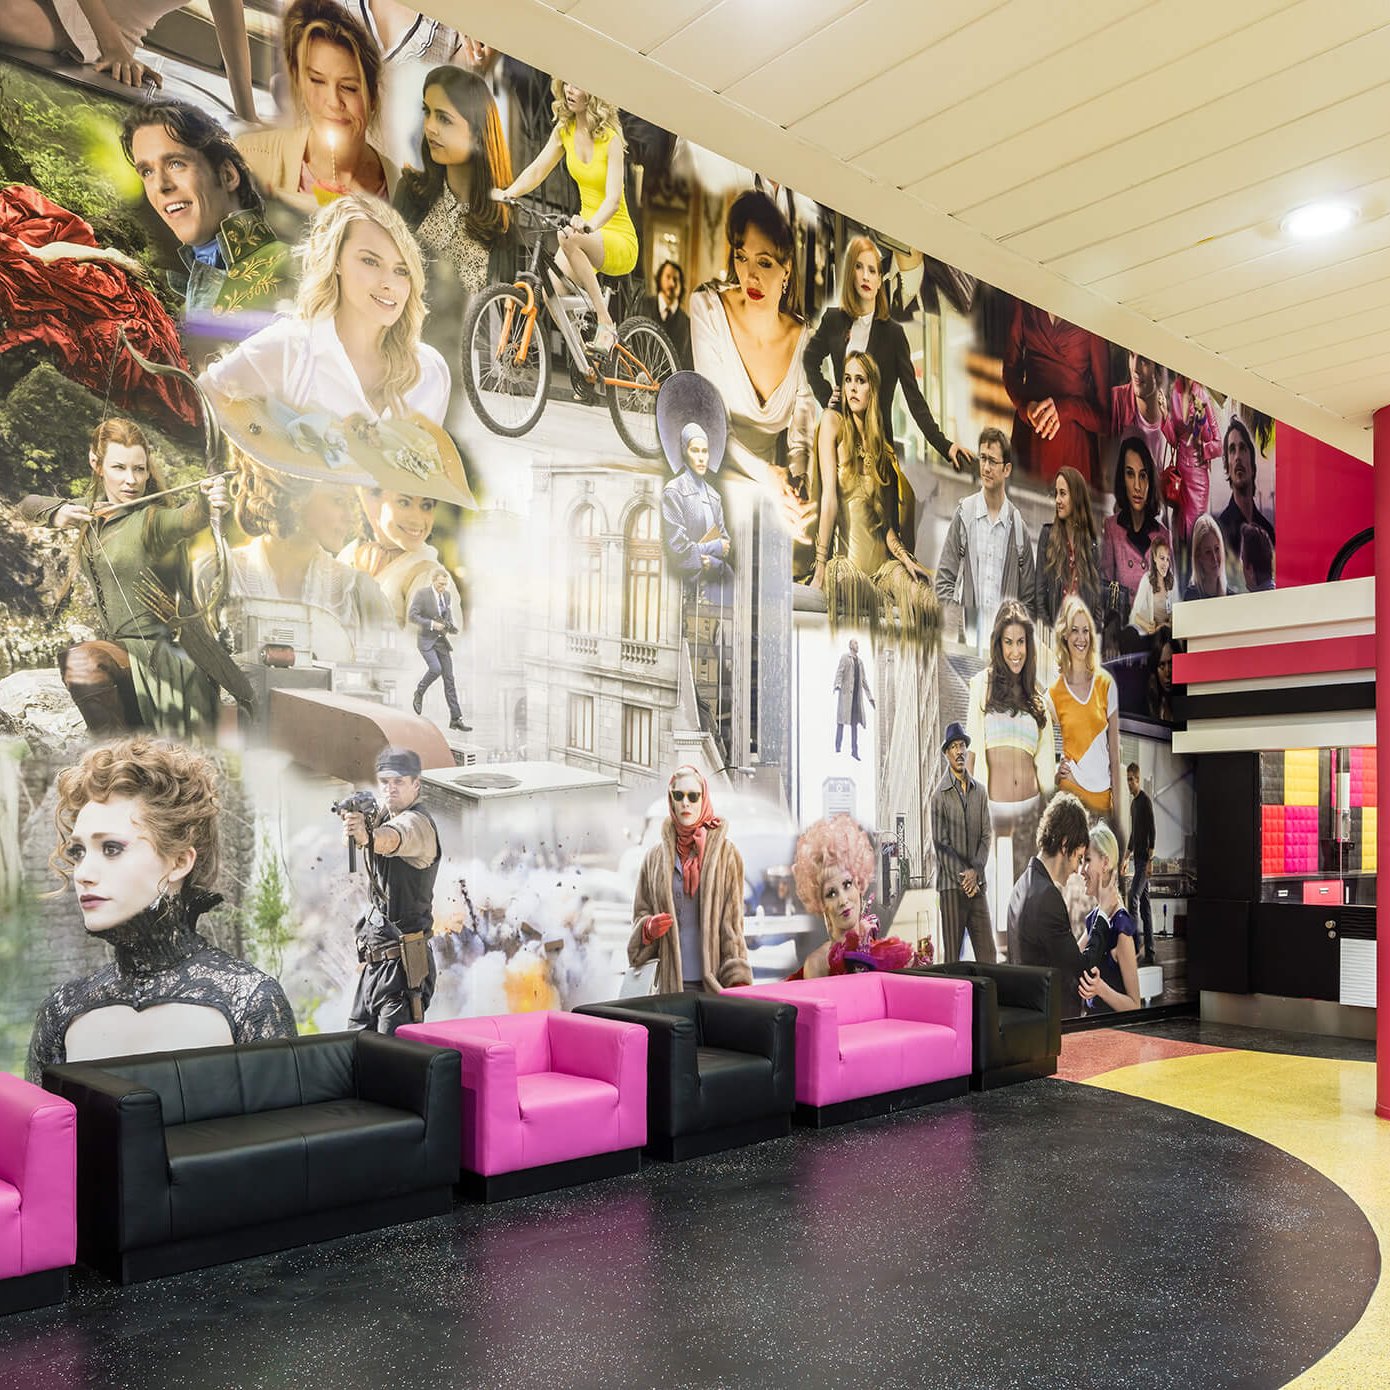 Kino in st. pölten als eventlocation nutzen- red carpet event